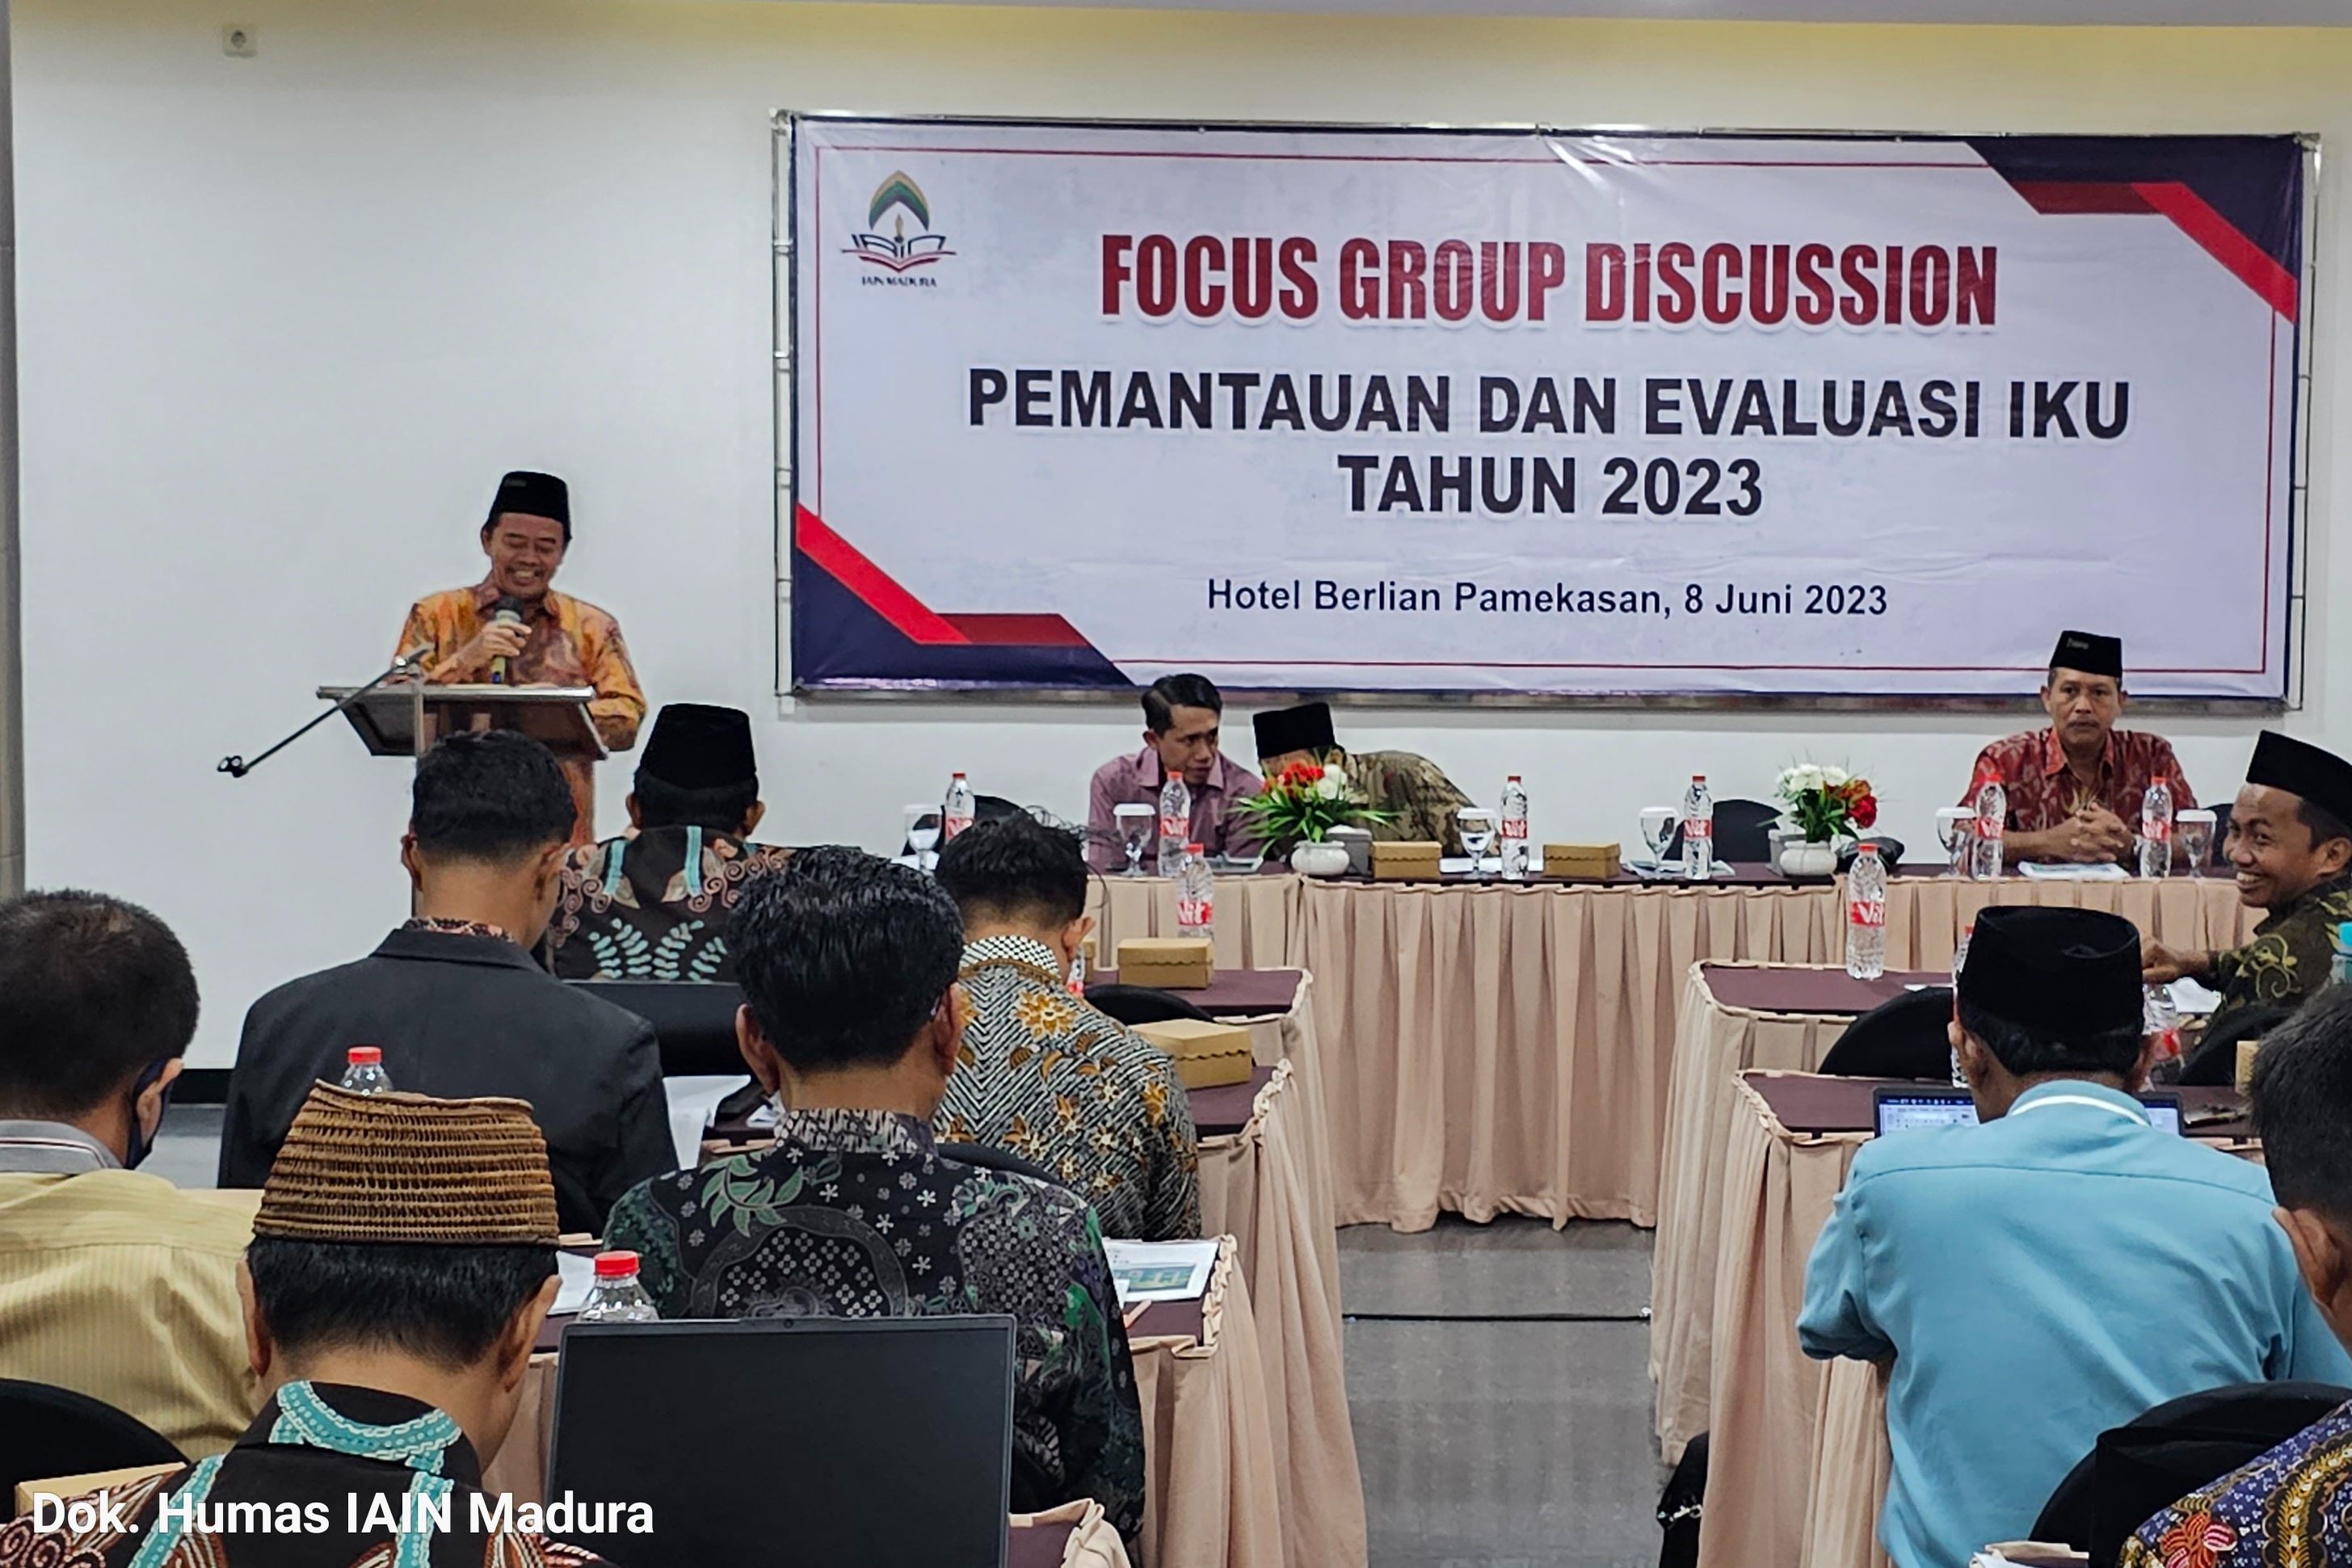 Focus Group Discussion (FGD): Pemantauan dan Evaluasi IKU 2023